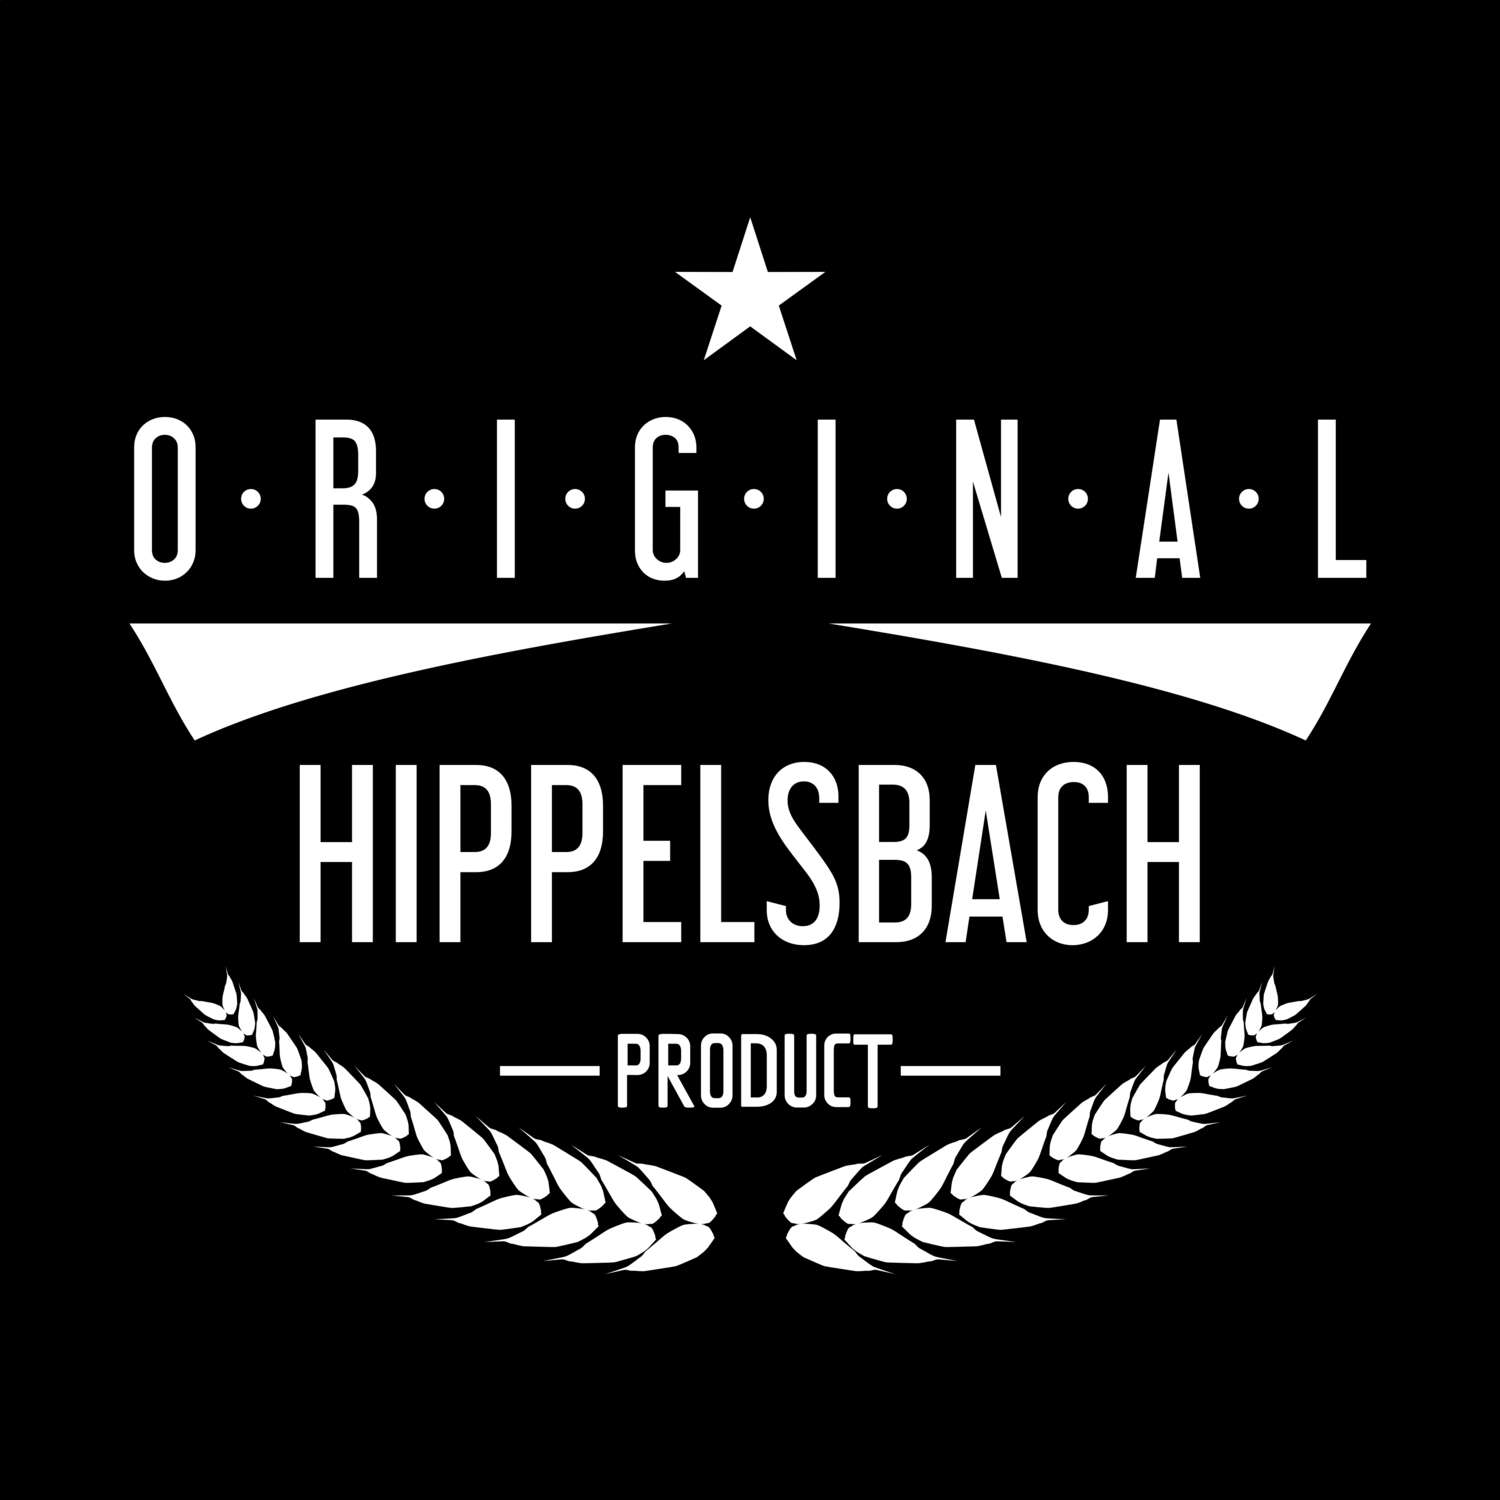 Hippelsbach T-Shirt »Original Product«